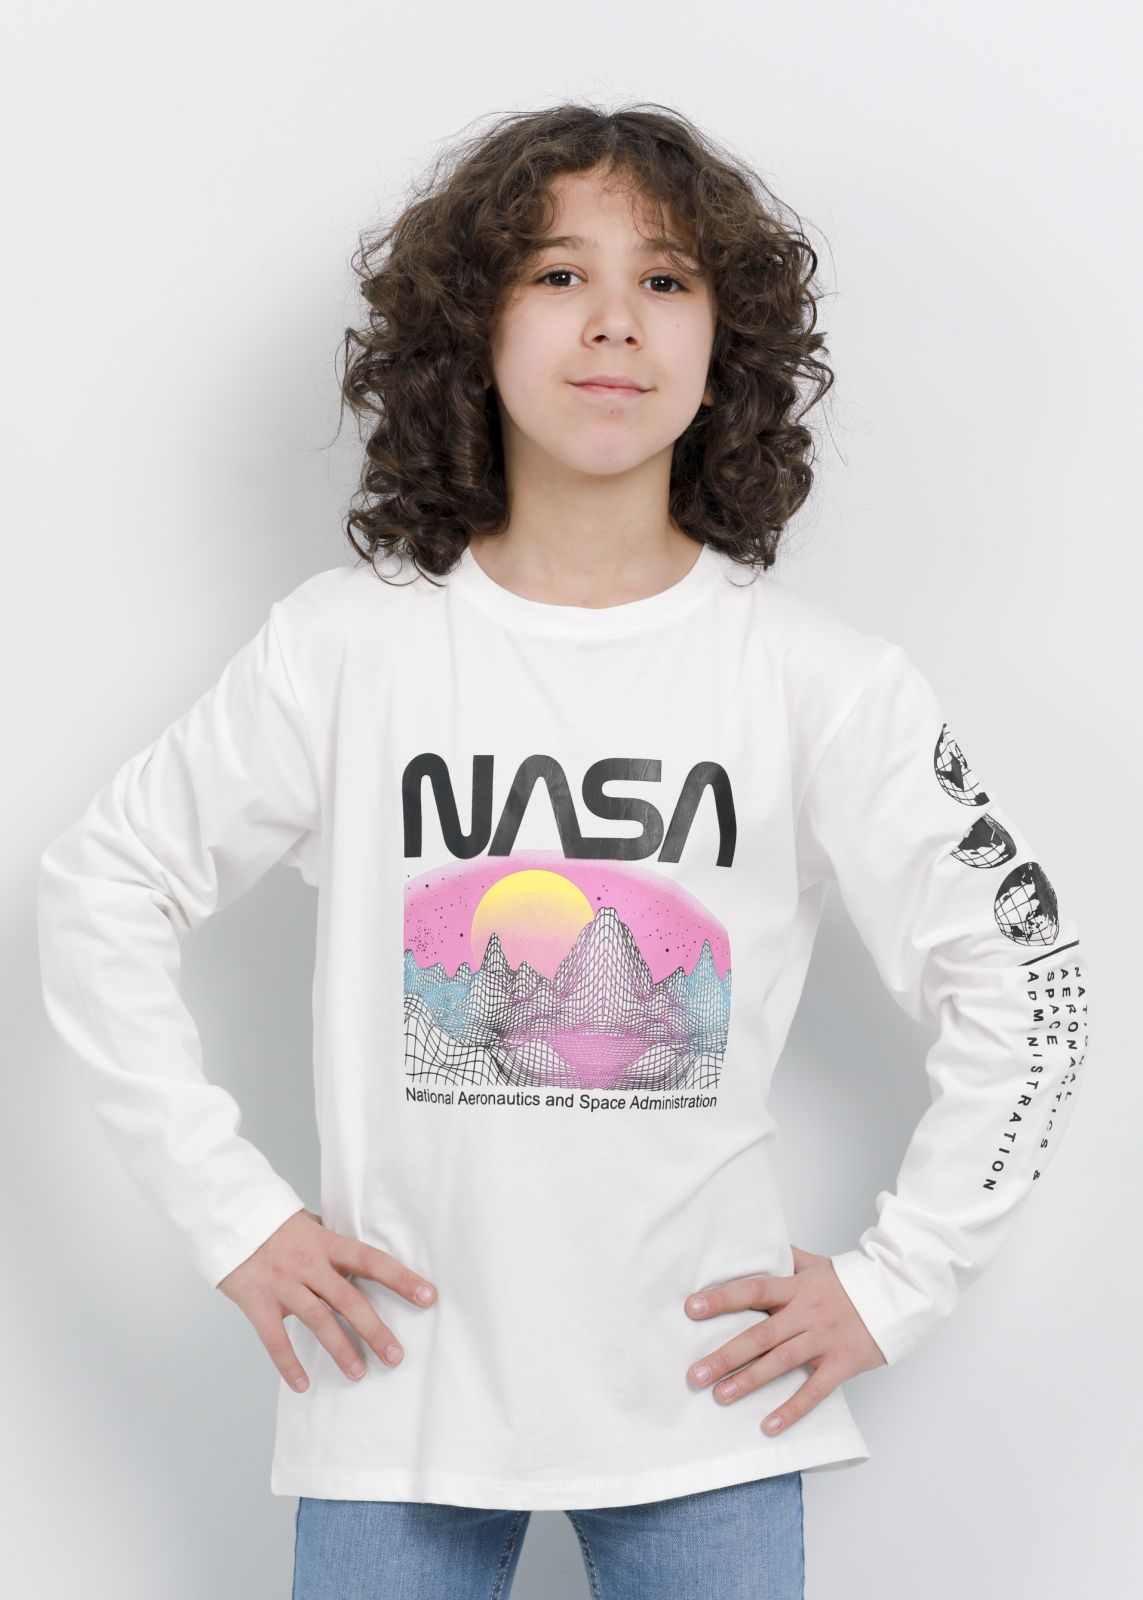 الالكتروني Clothing|61223160232|متجر Printed Boy “Nasa” لافاميليا Design Blouse|Kids Kids